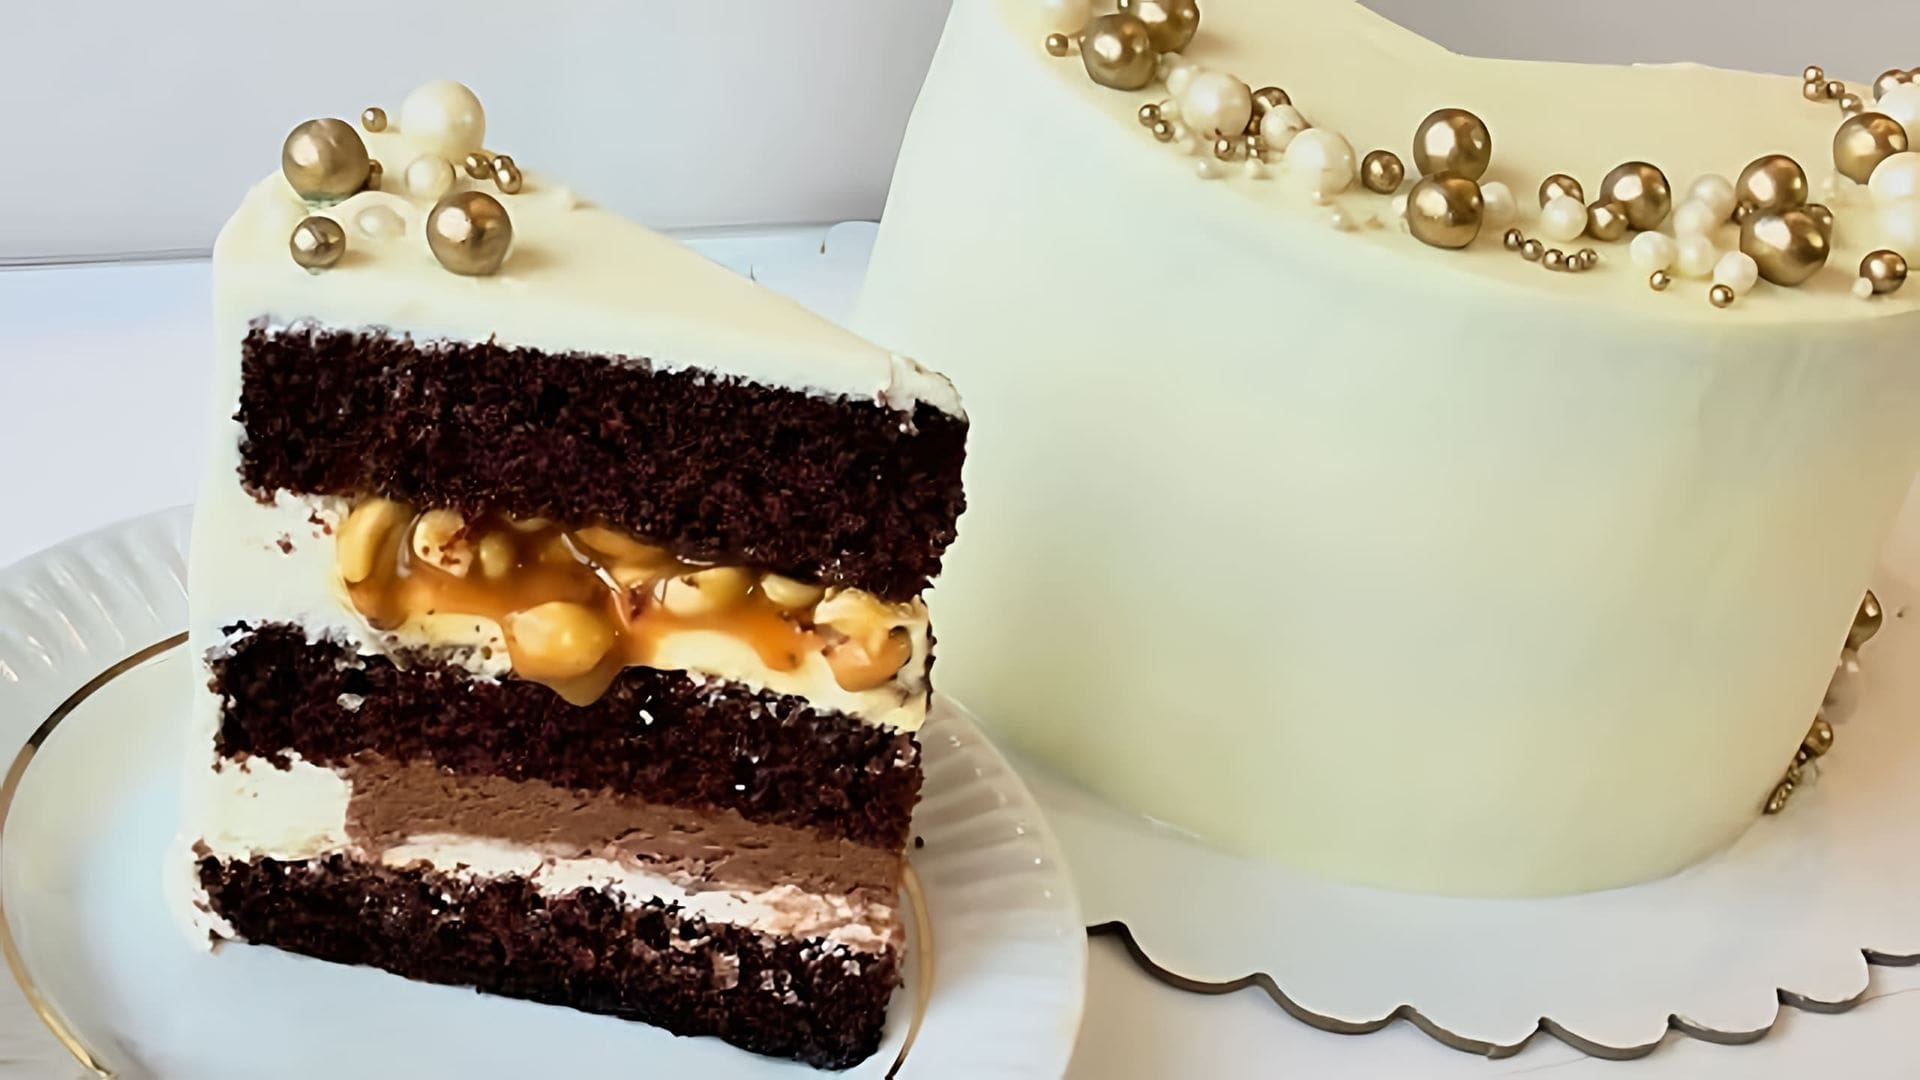 В этом видео демонстрируется рецепт приготовления шоколадного торта "Сникерс"